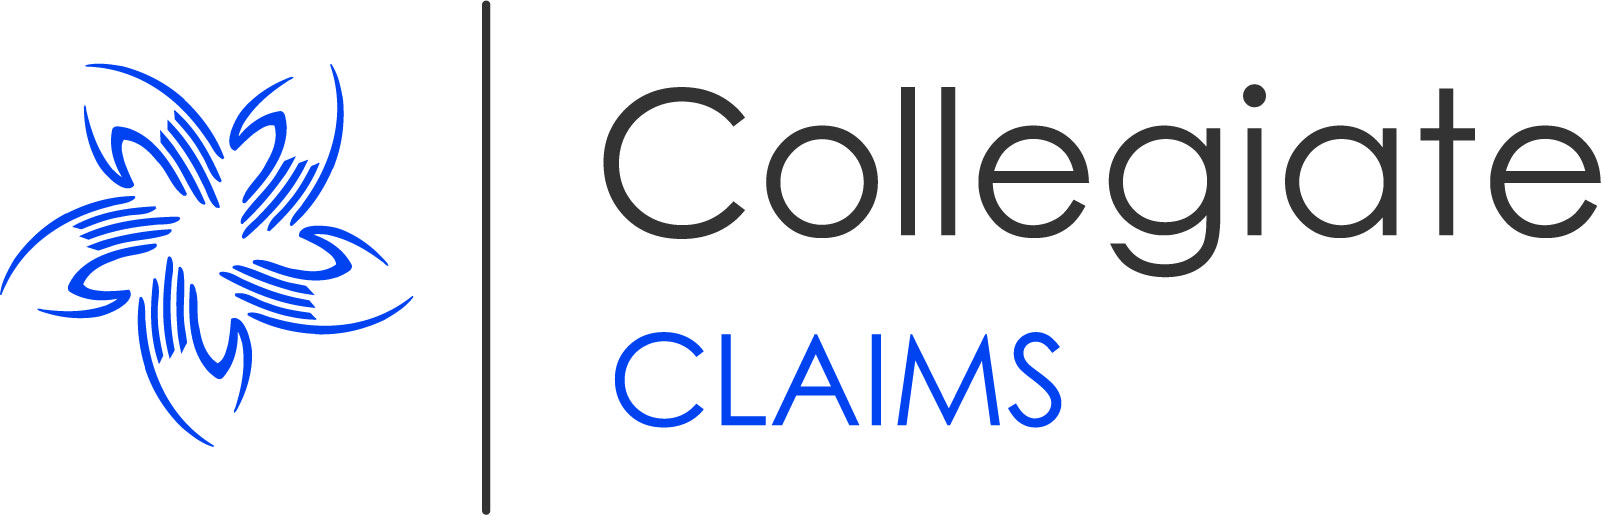 Collegiate Claims Image